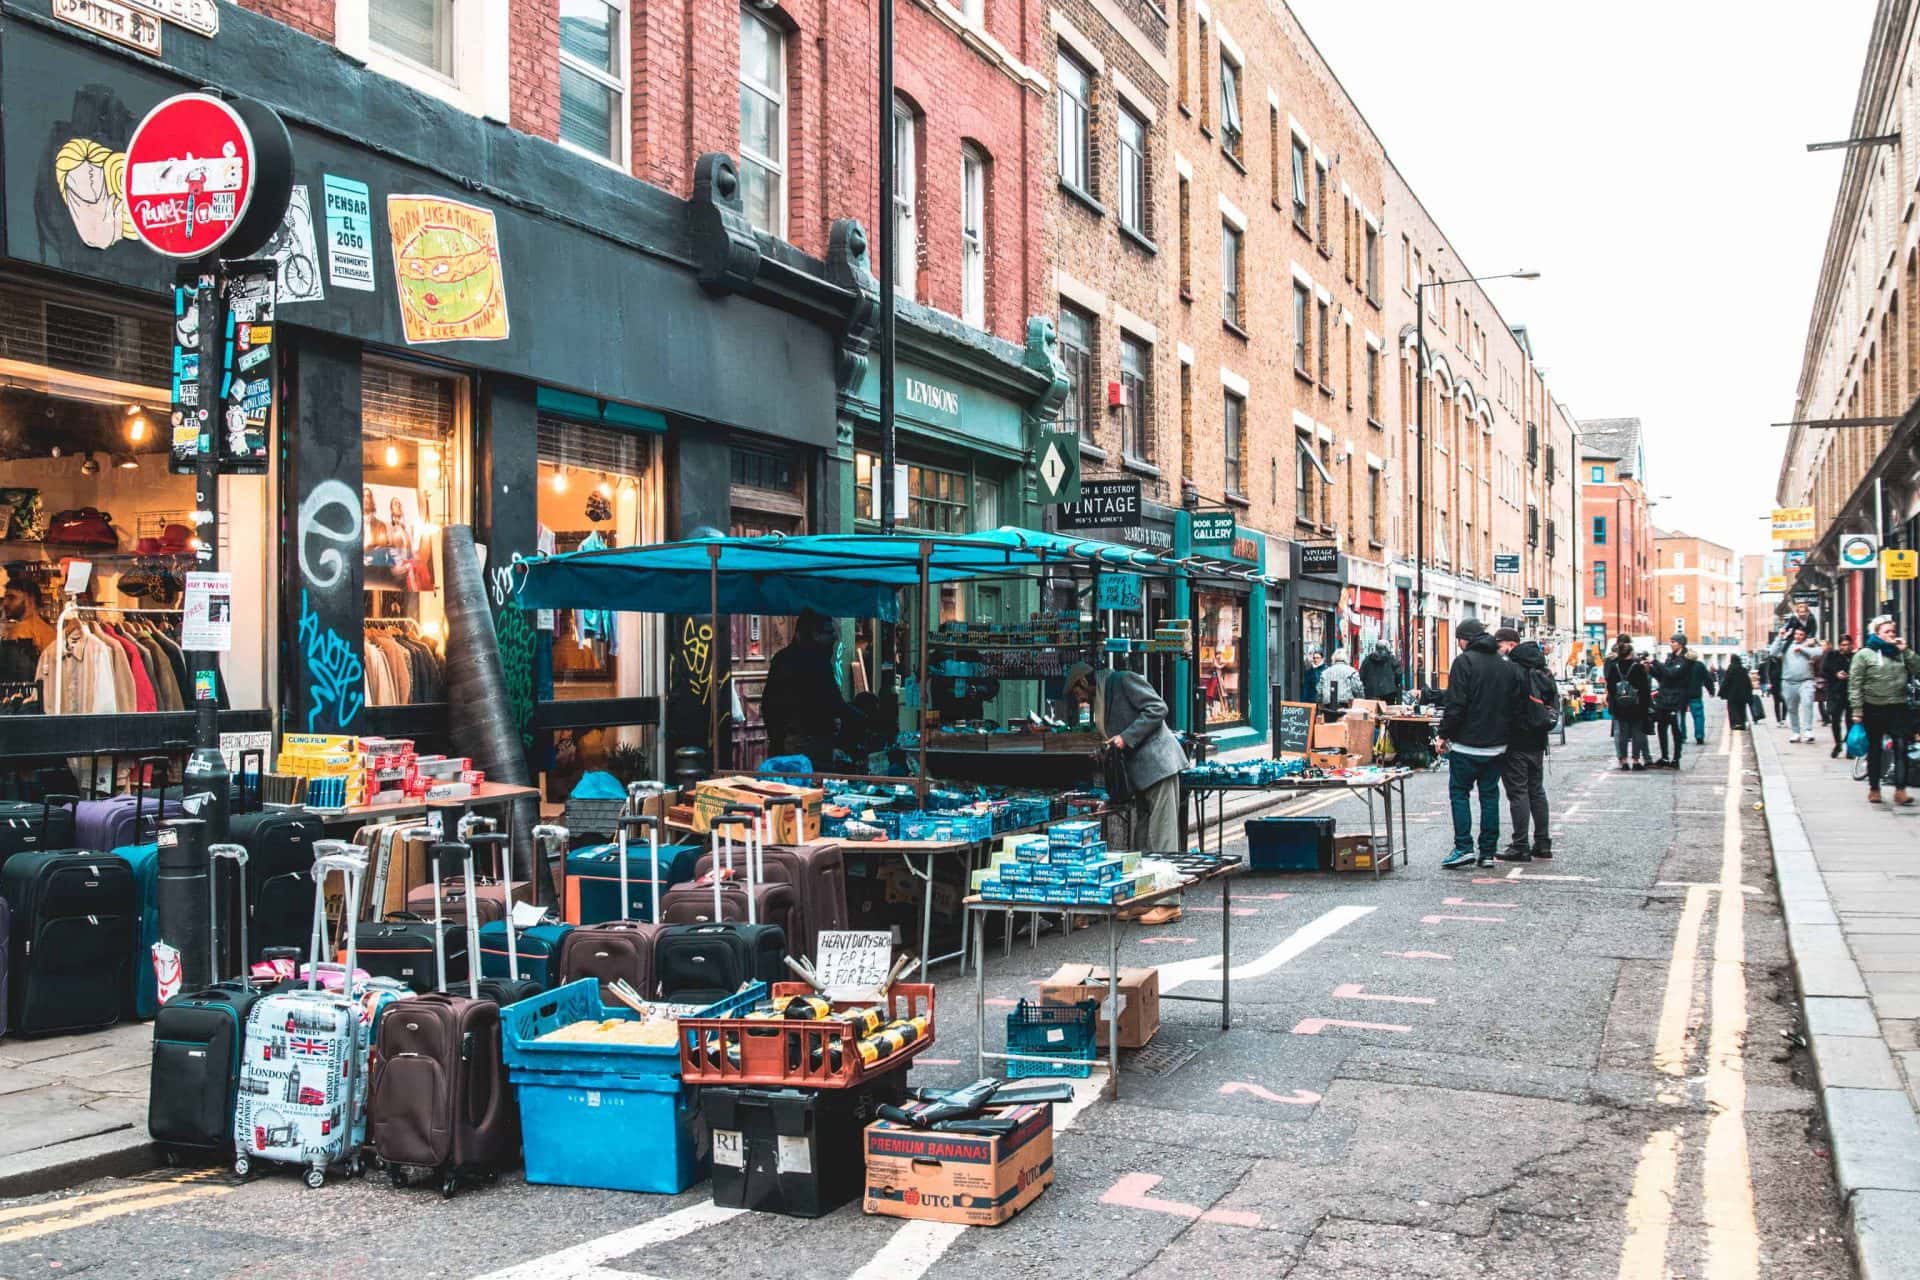 Shoreditch5 - Londen tips: 79 bezienswaardigheden + leuke dingen om te doen tijdens stedentrip